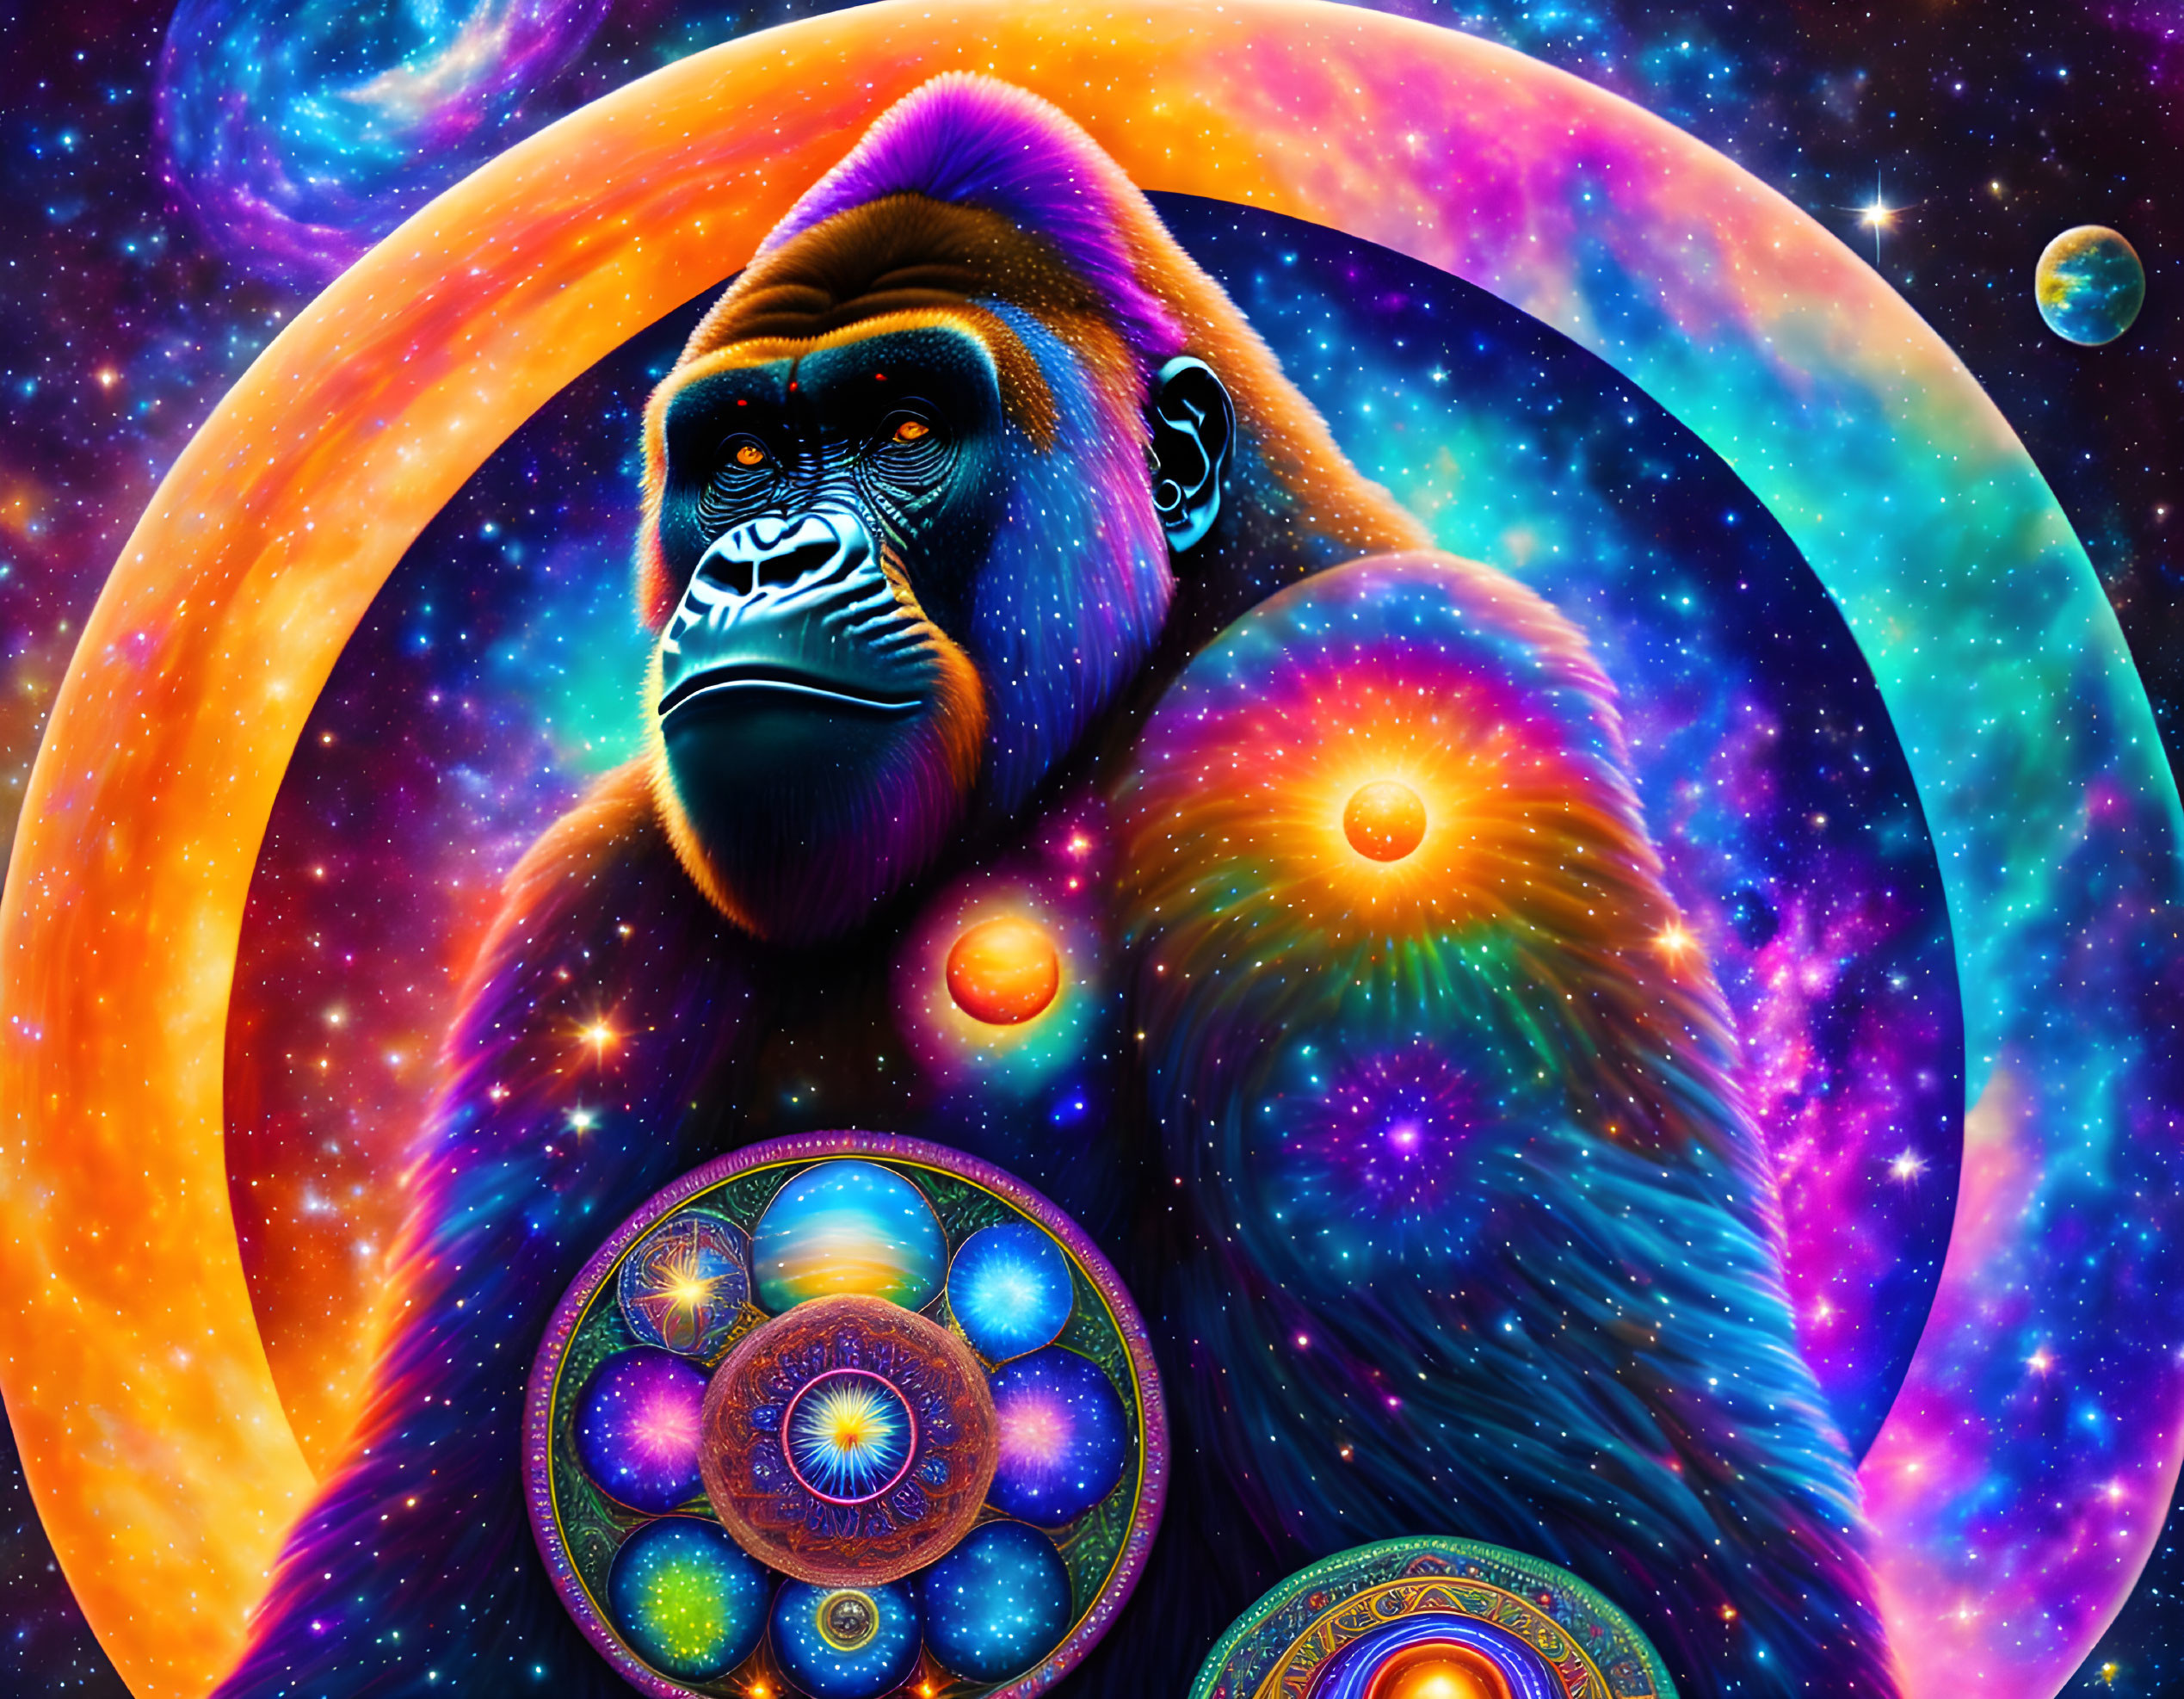 Gorilla in the universe 